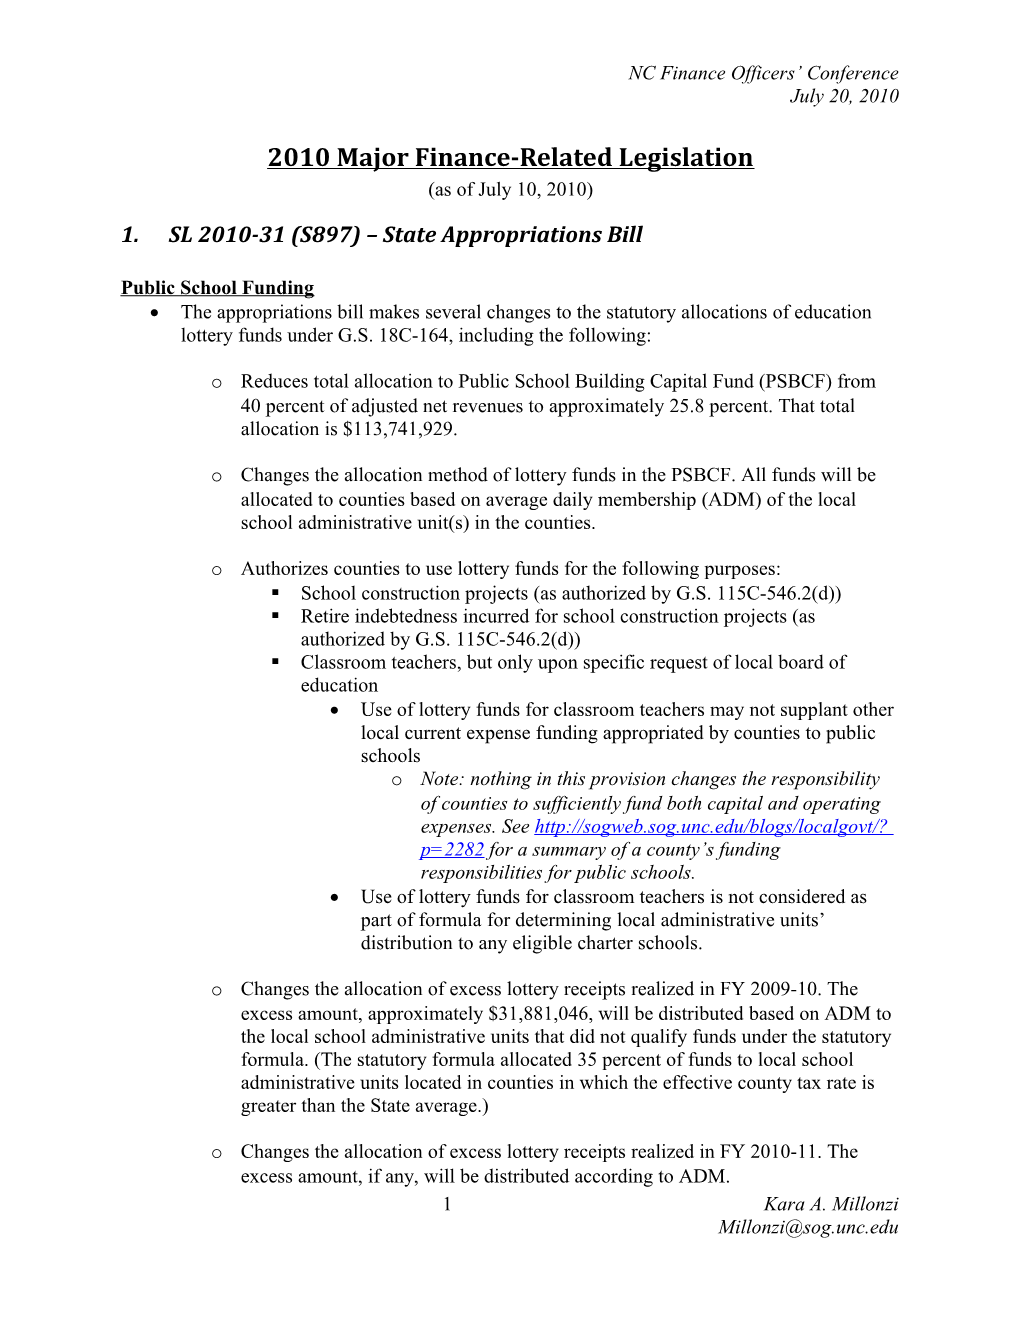 2010 Major Finance-Related Legislation